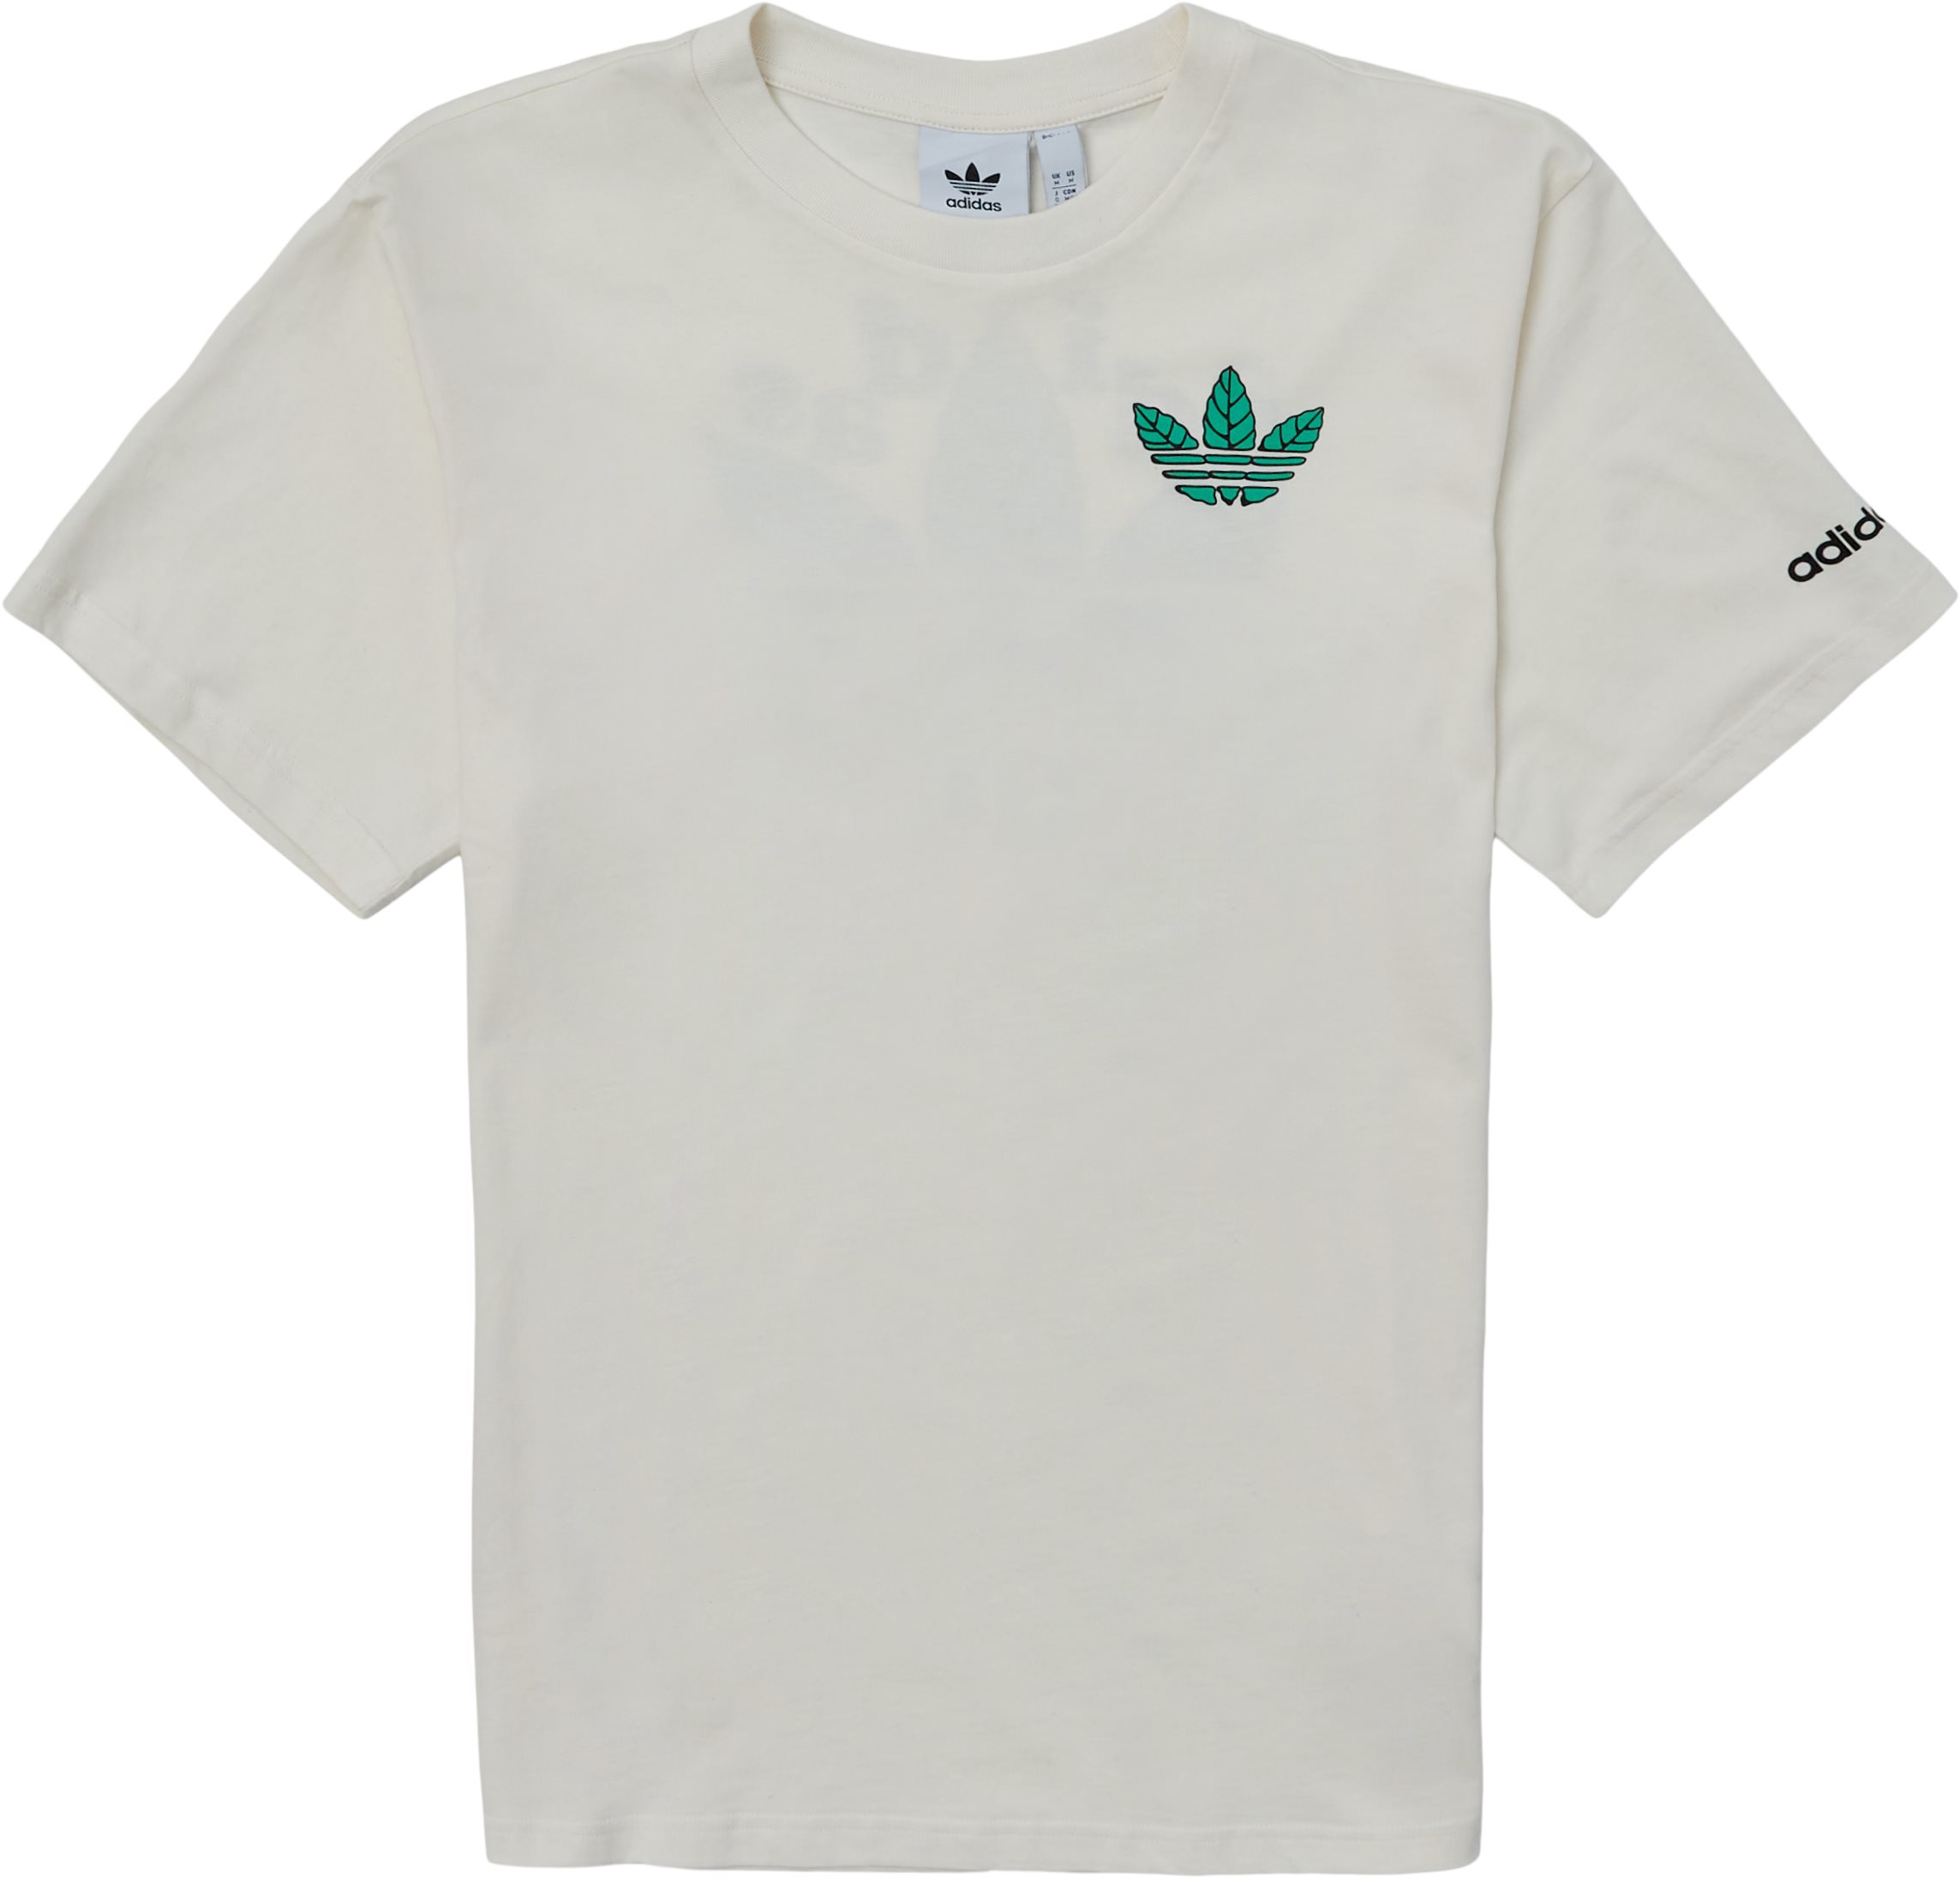 Trefoil Leaves - T-shirts - Regular fit - White